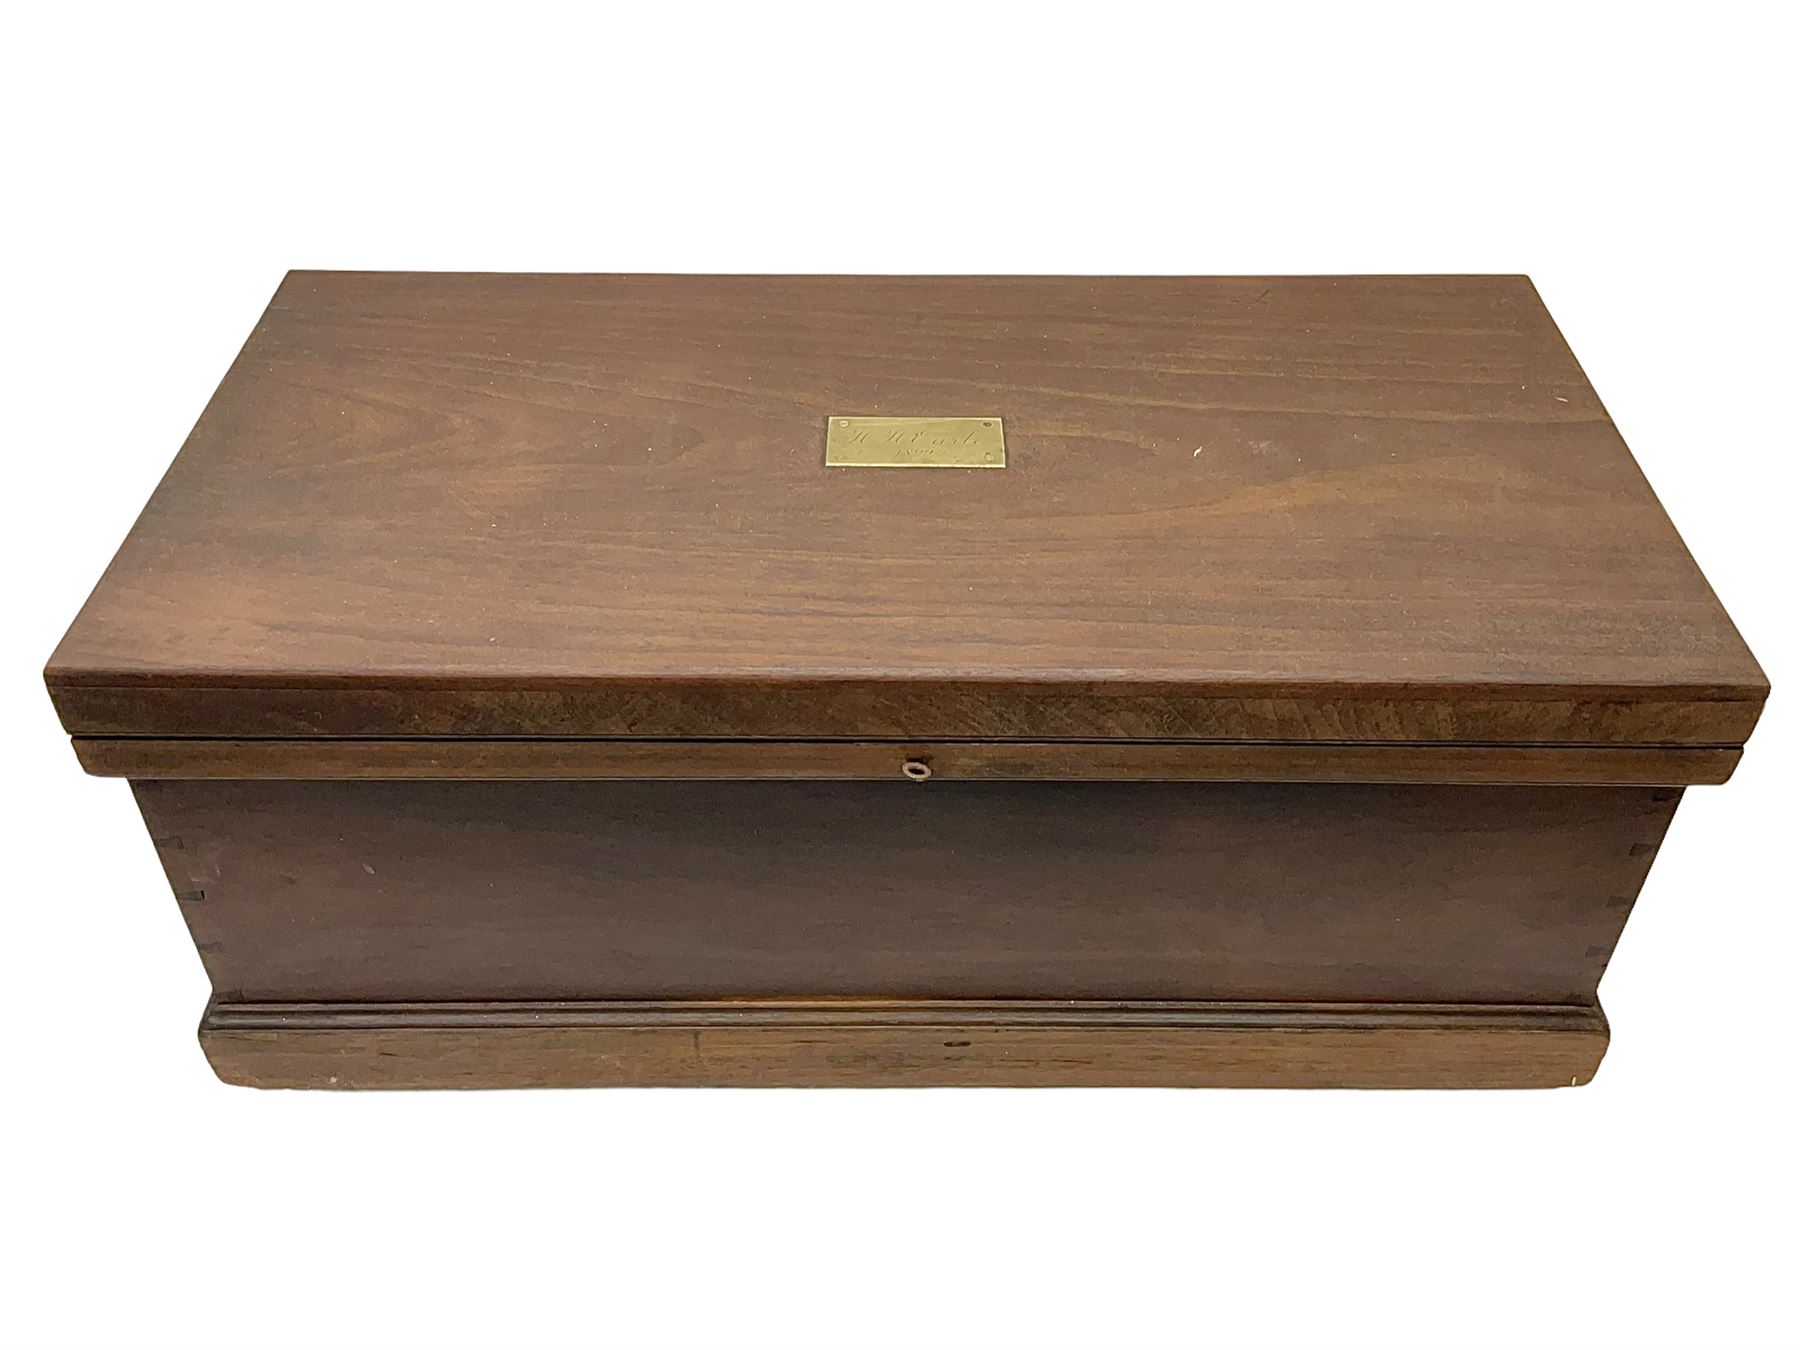 19th century teak chest